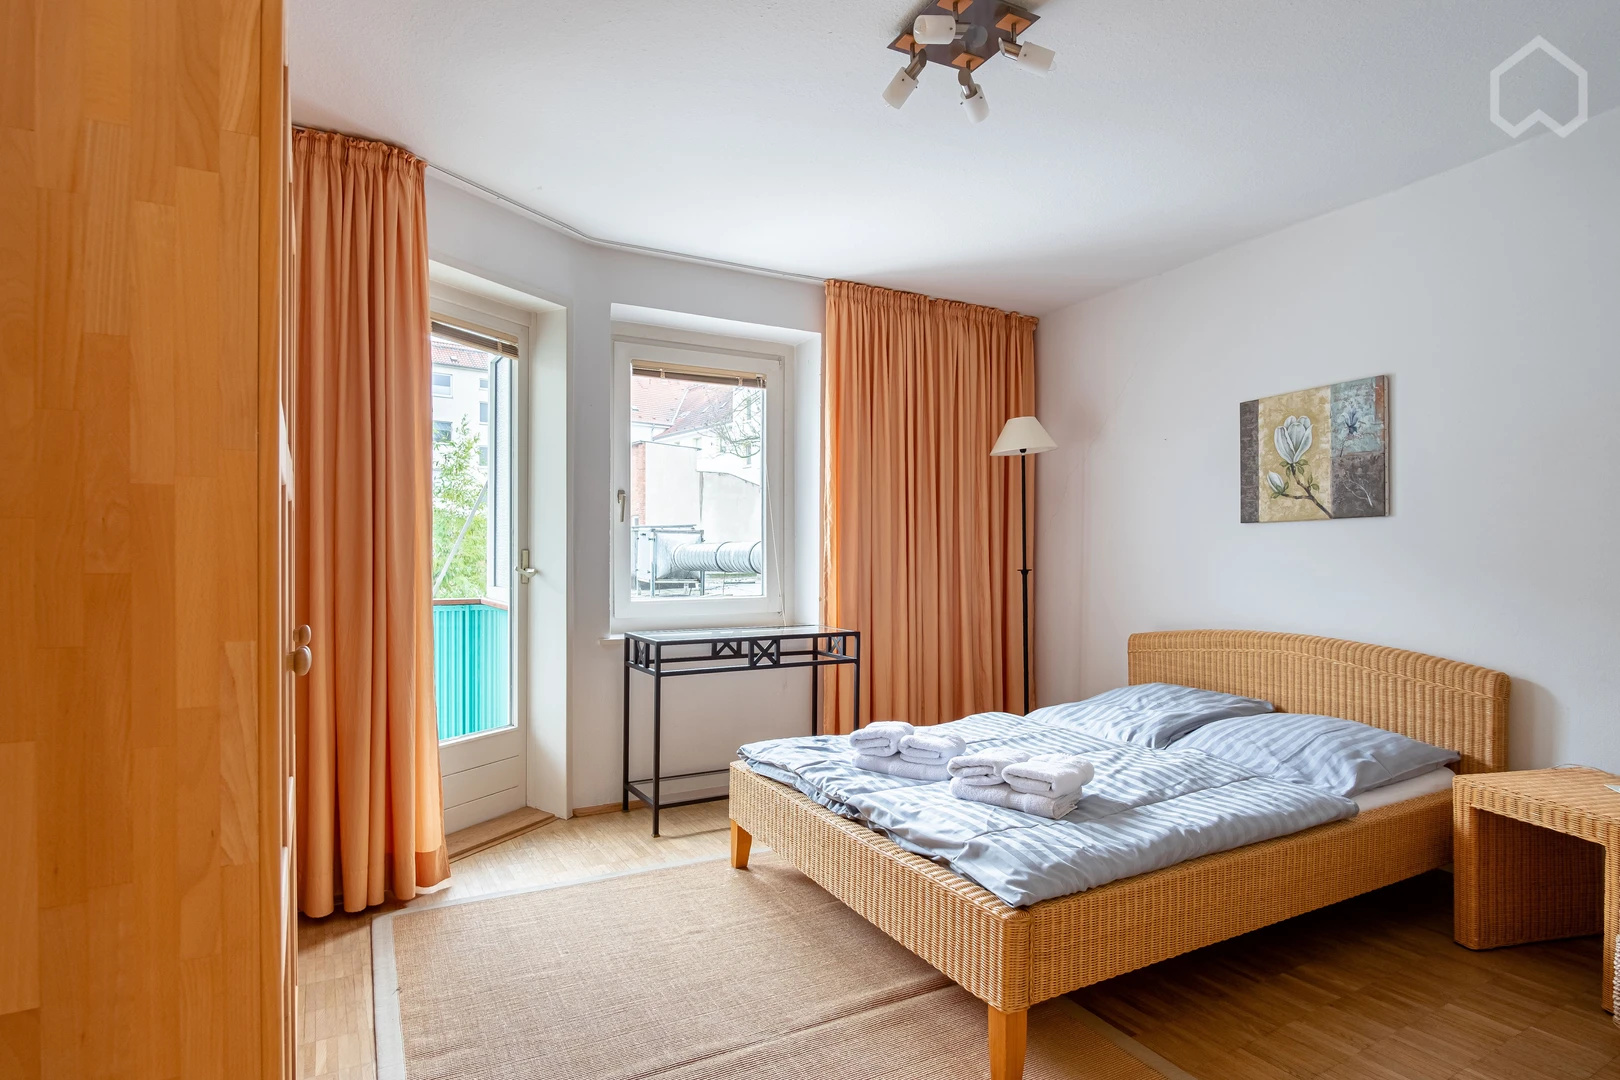 Alquiler de habitaciones por meses en hannover